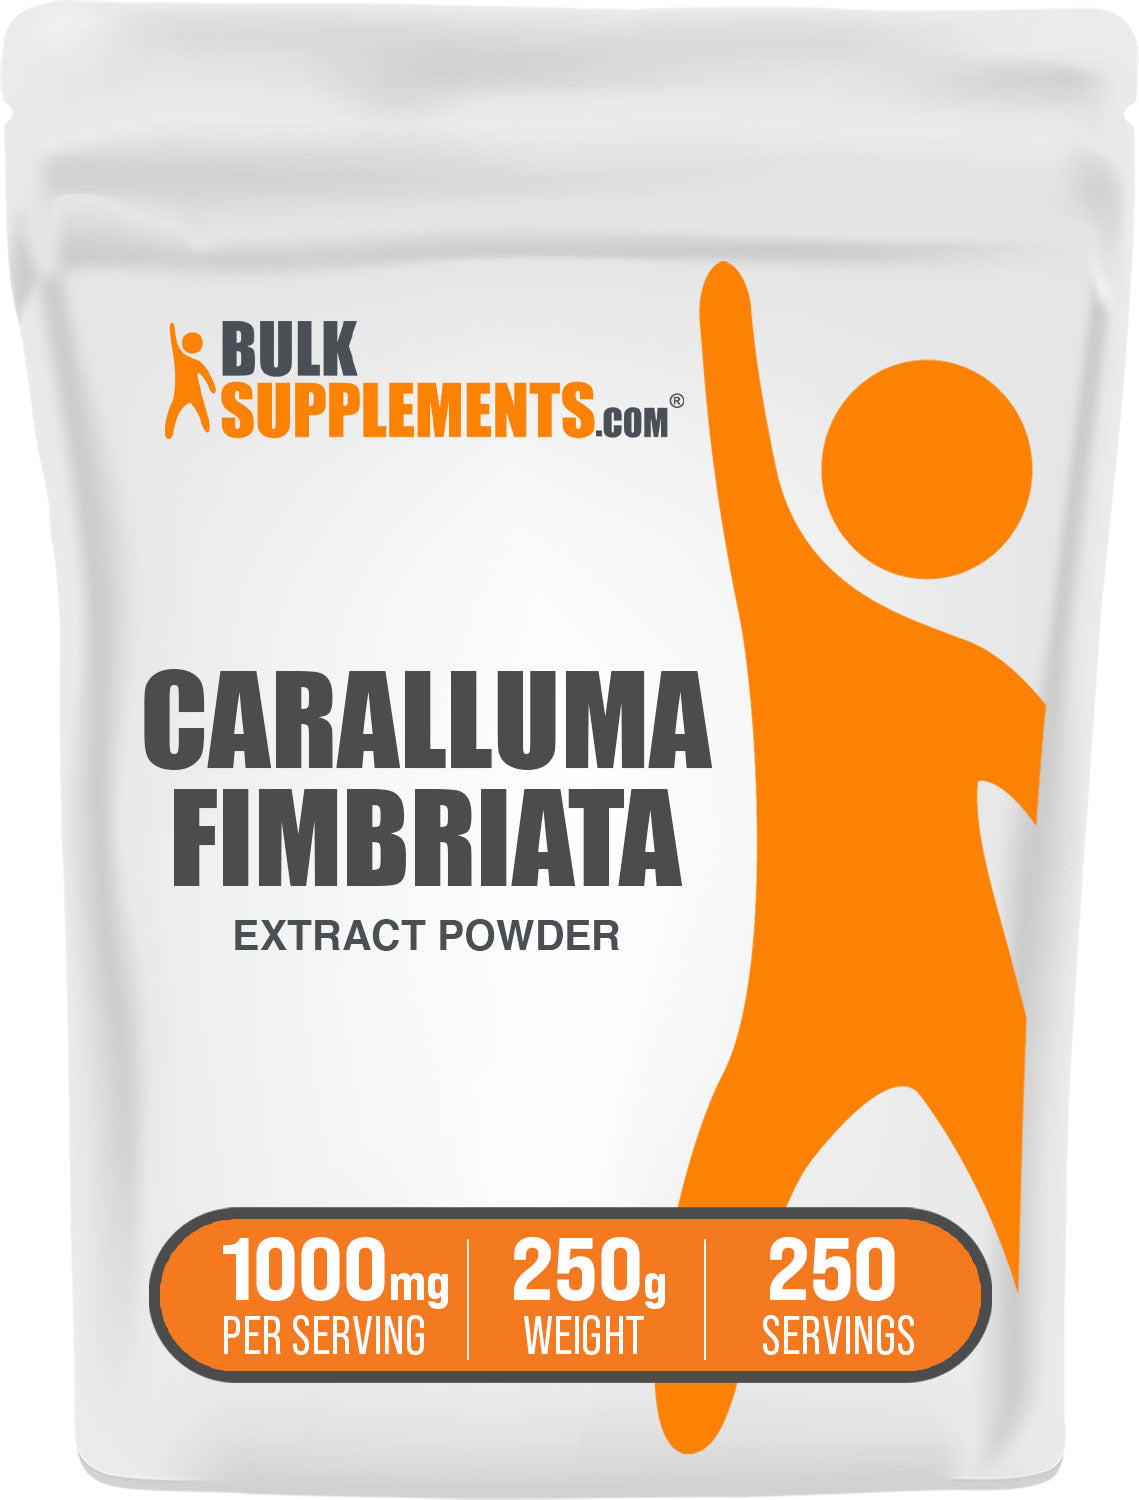 BulkSupplements.com Caralluma Fimbriata Extract powder 250g bag